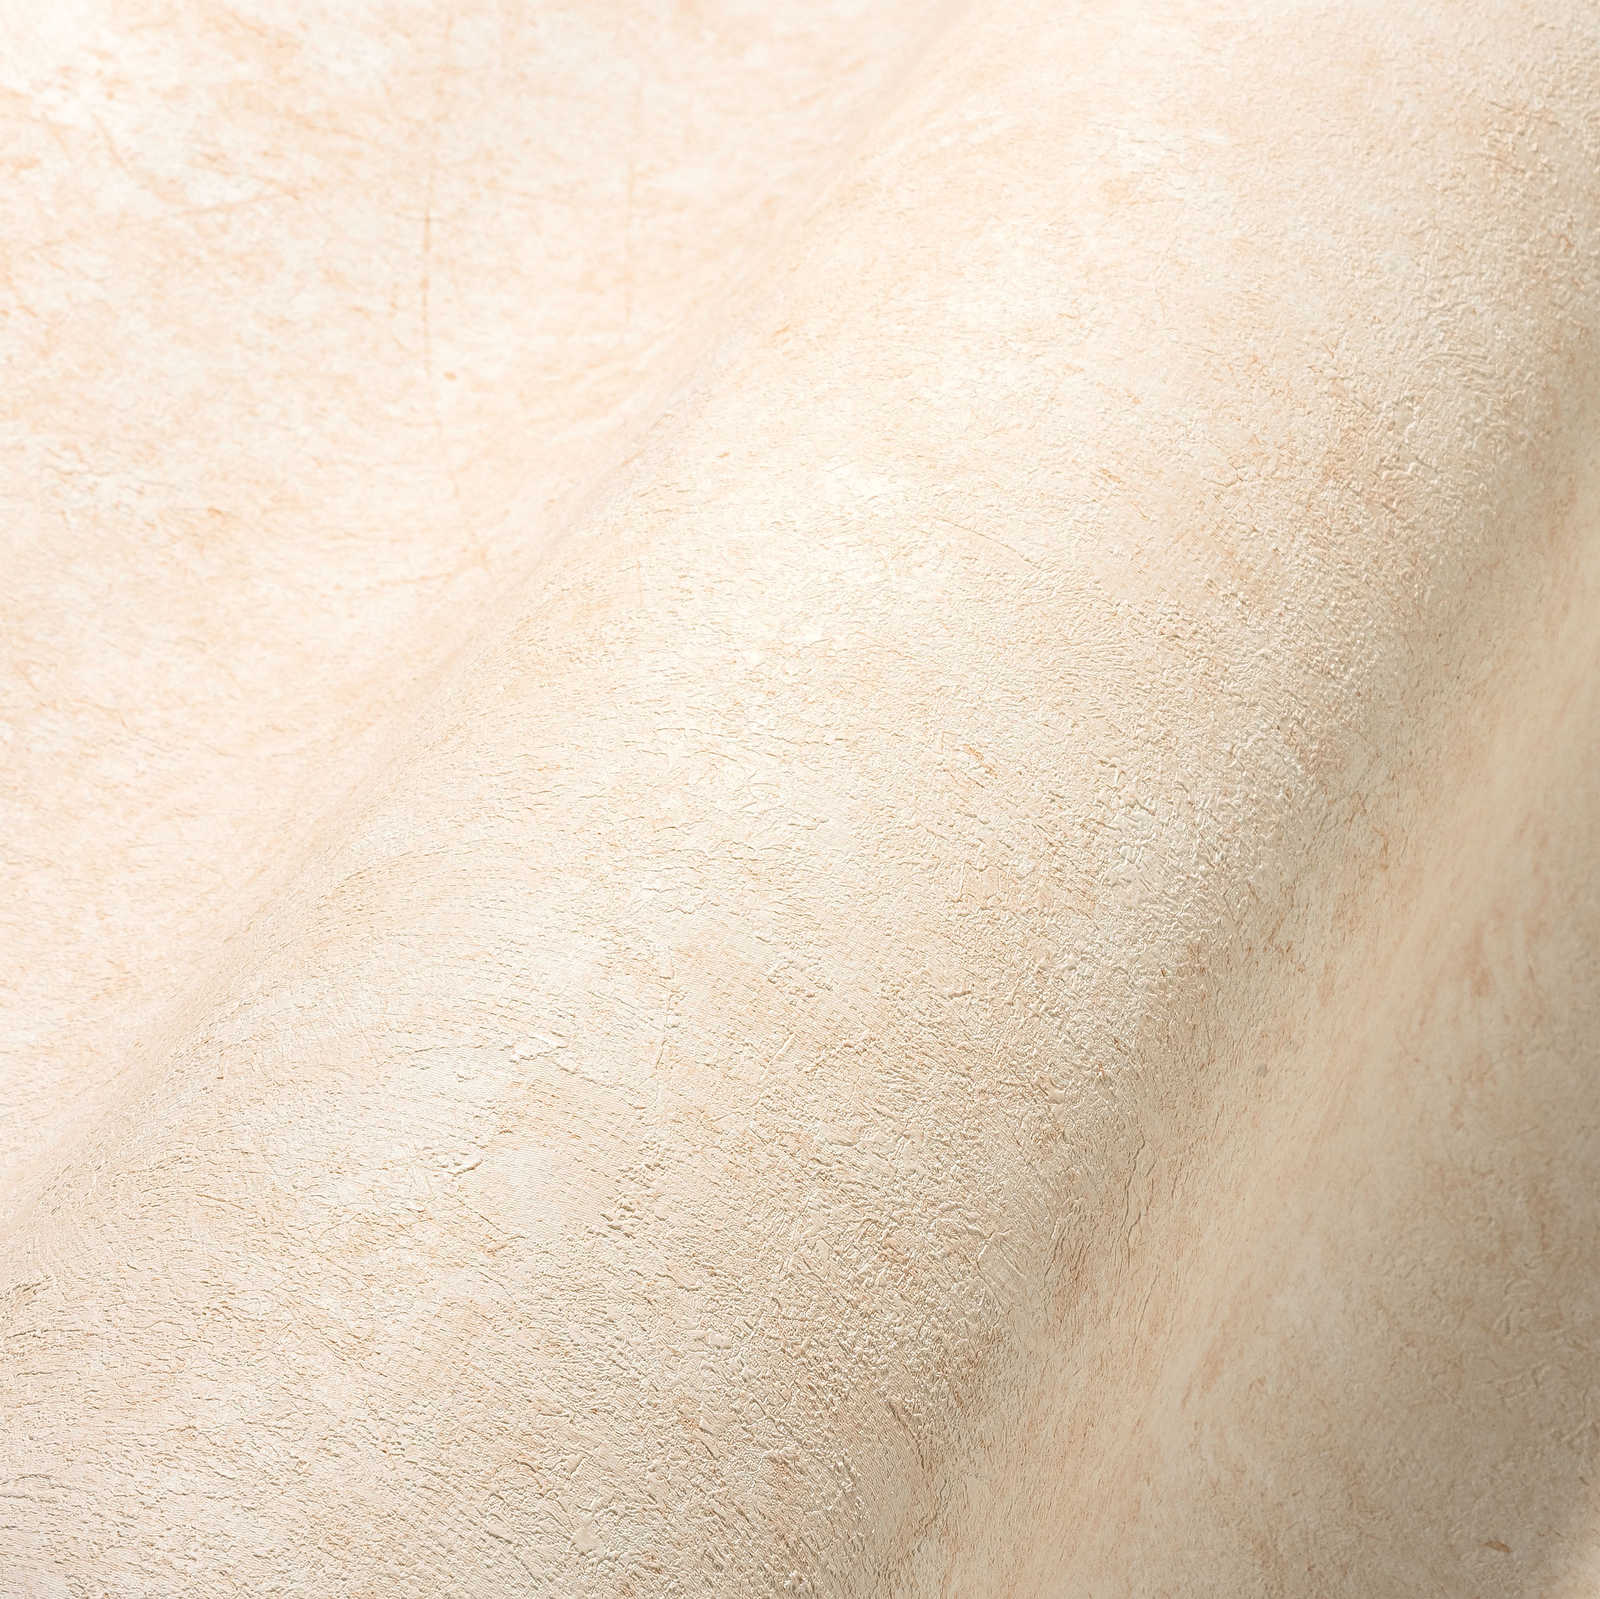             Papel pintado con textura en tonos lisos y sutiles: crema, beige
        